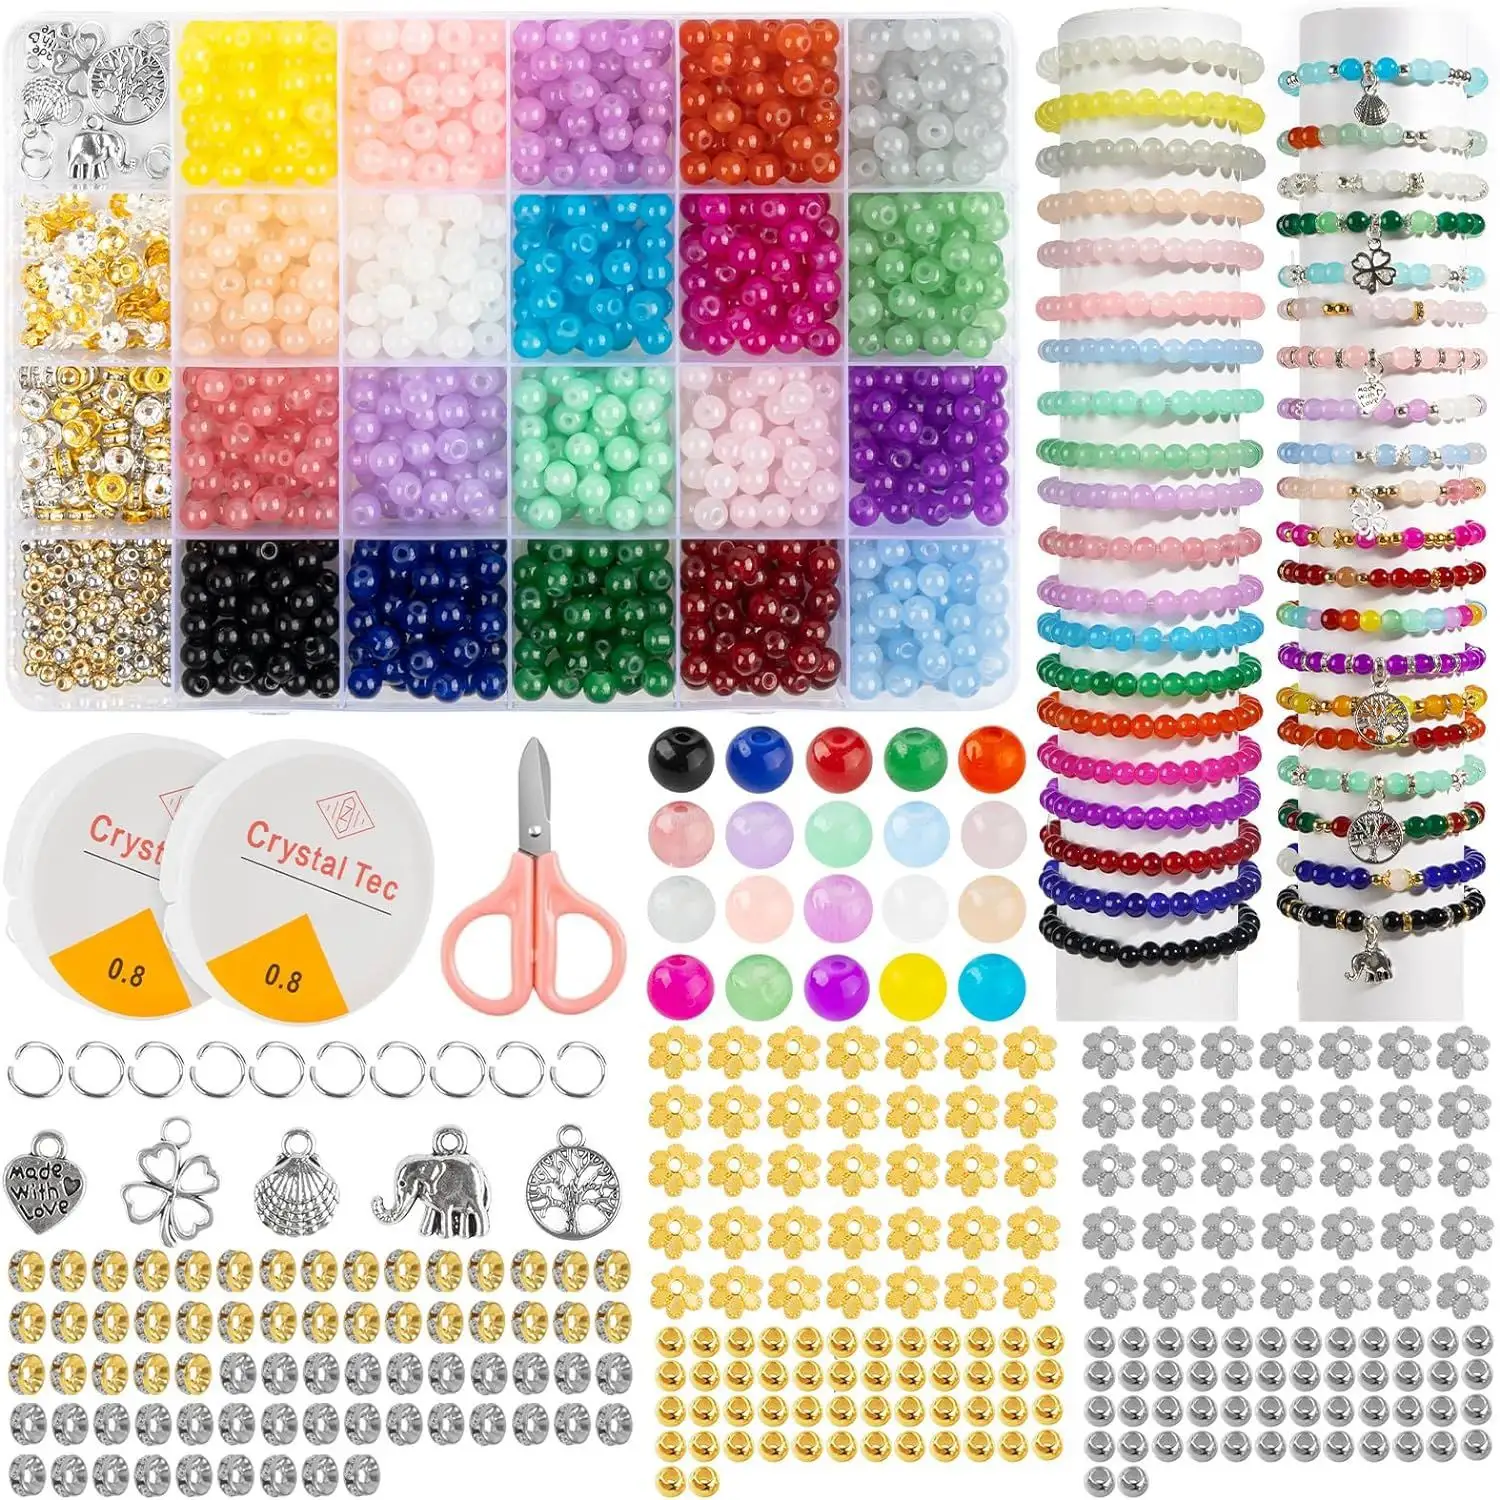 Conjunto de miçangas de vidro para pulseiras, kit de miçangas com letras e cores mistas, 6 mm, kit de artesanato com miçangas para pulseiras